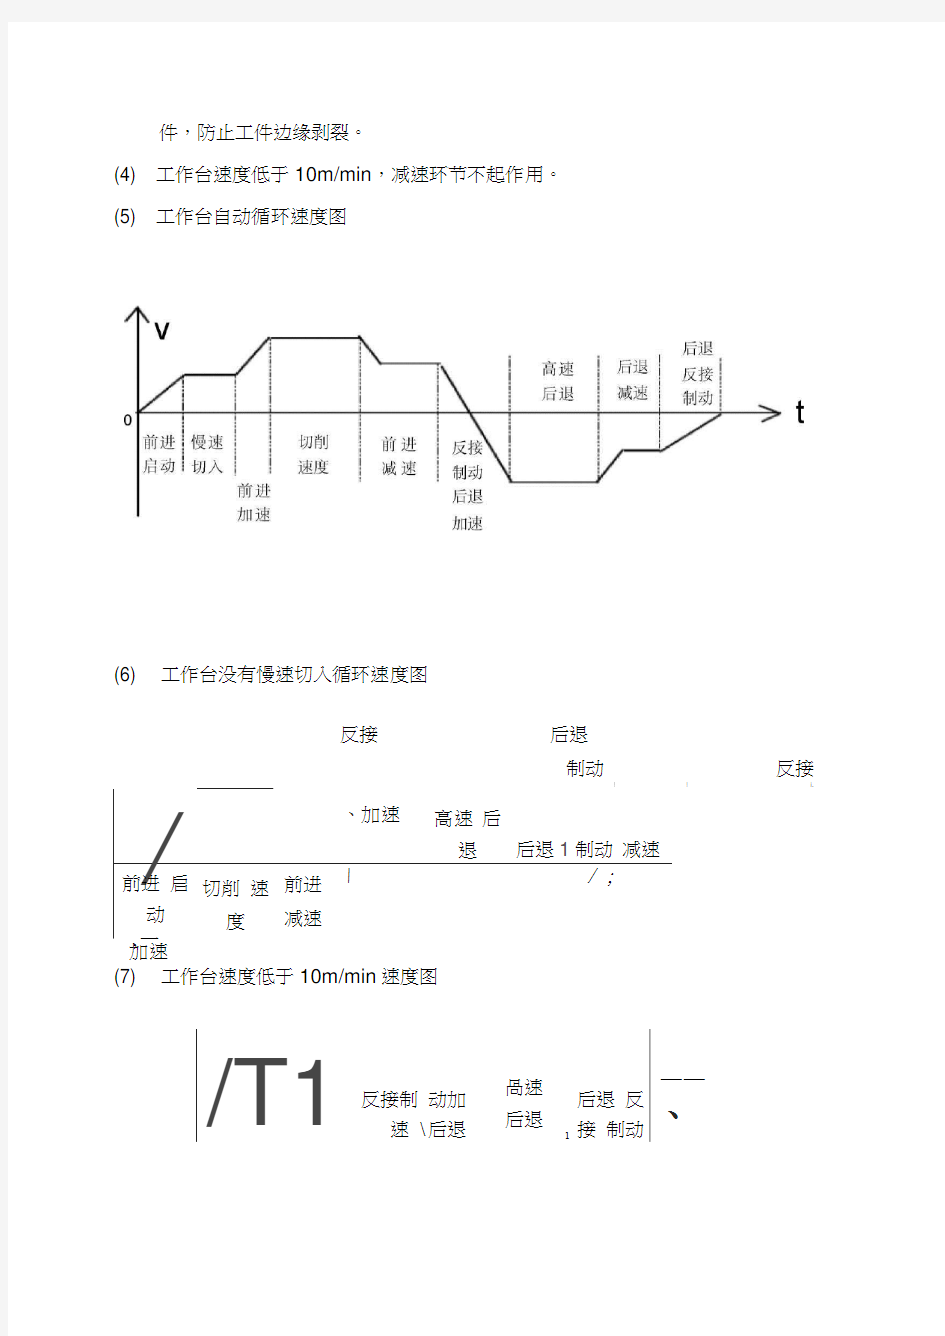 ba龙门刨床电气线路分析(全)教学文案